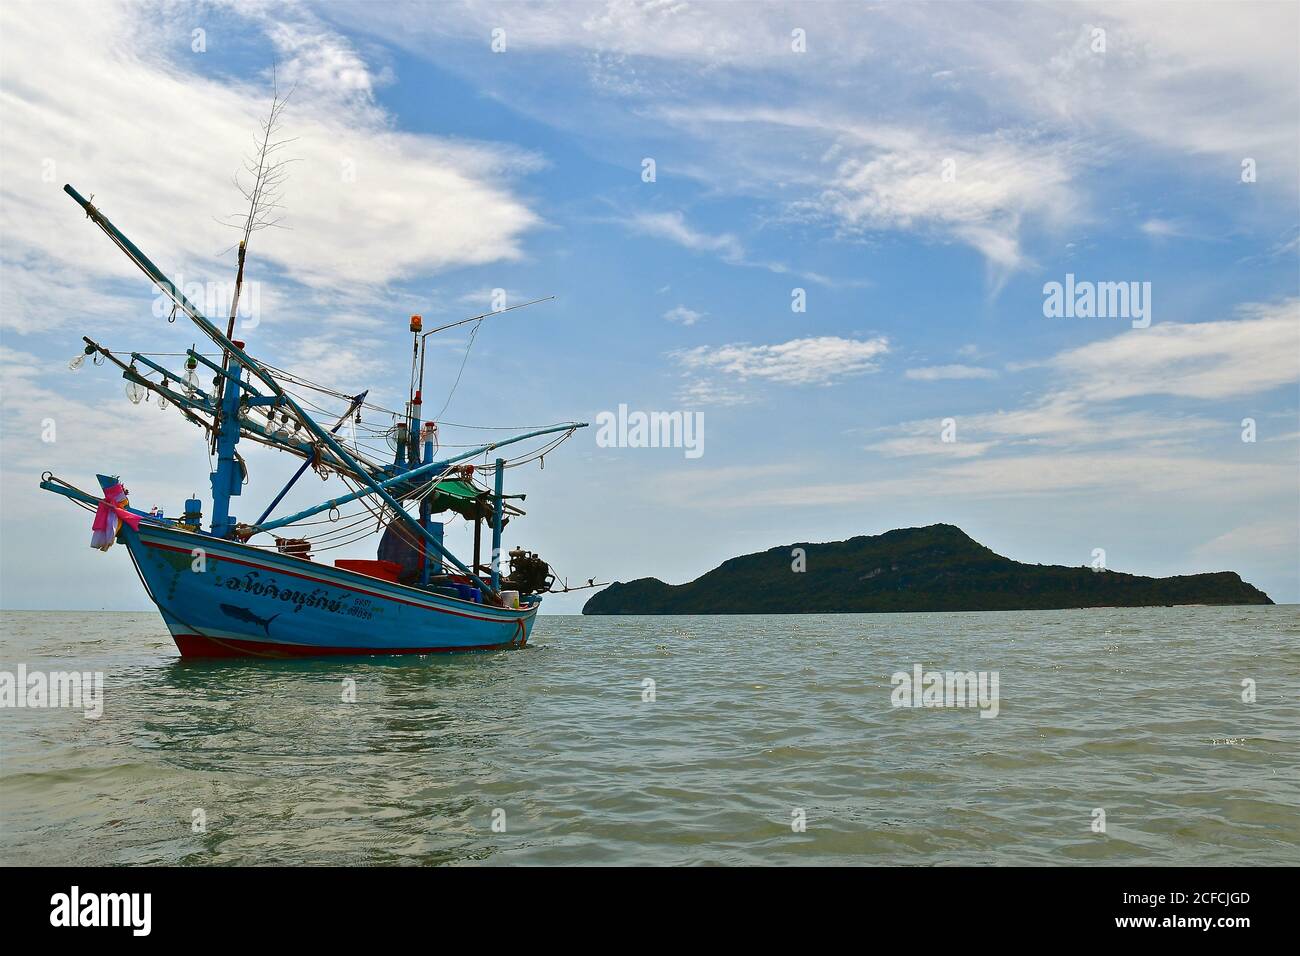 Un bateau de pêche traditionnel en bois amarré à marée haute avec une petite île déserte en arrière-plan. Banque D'Images